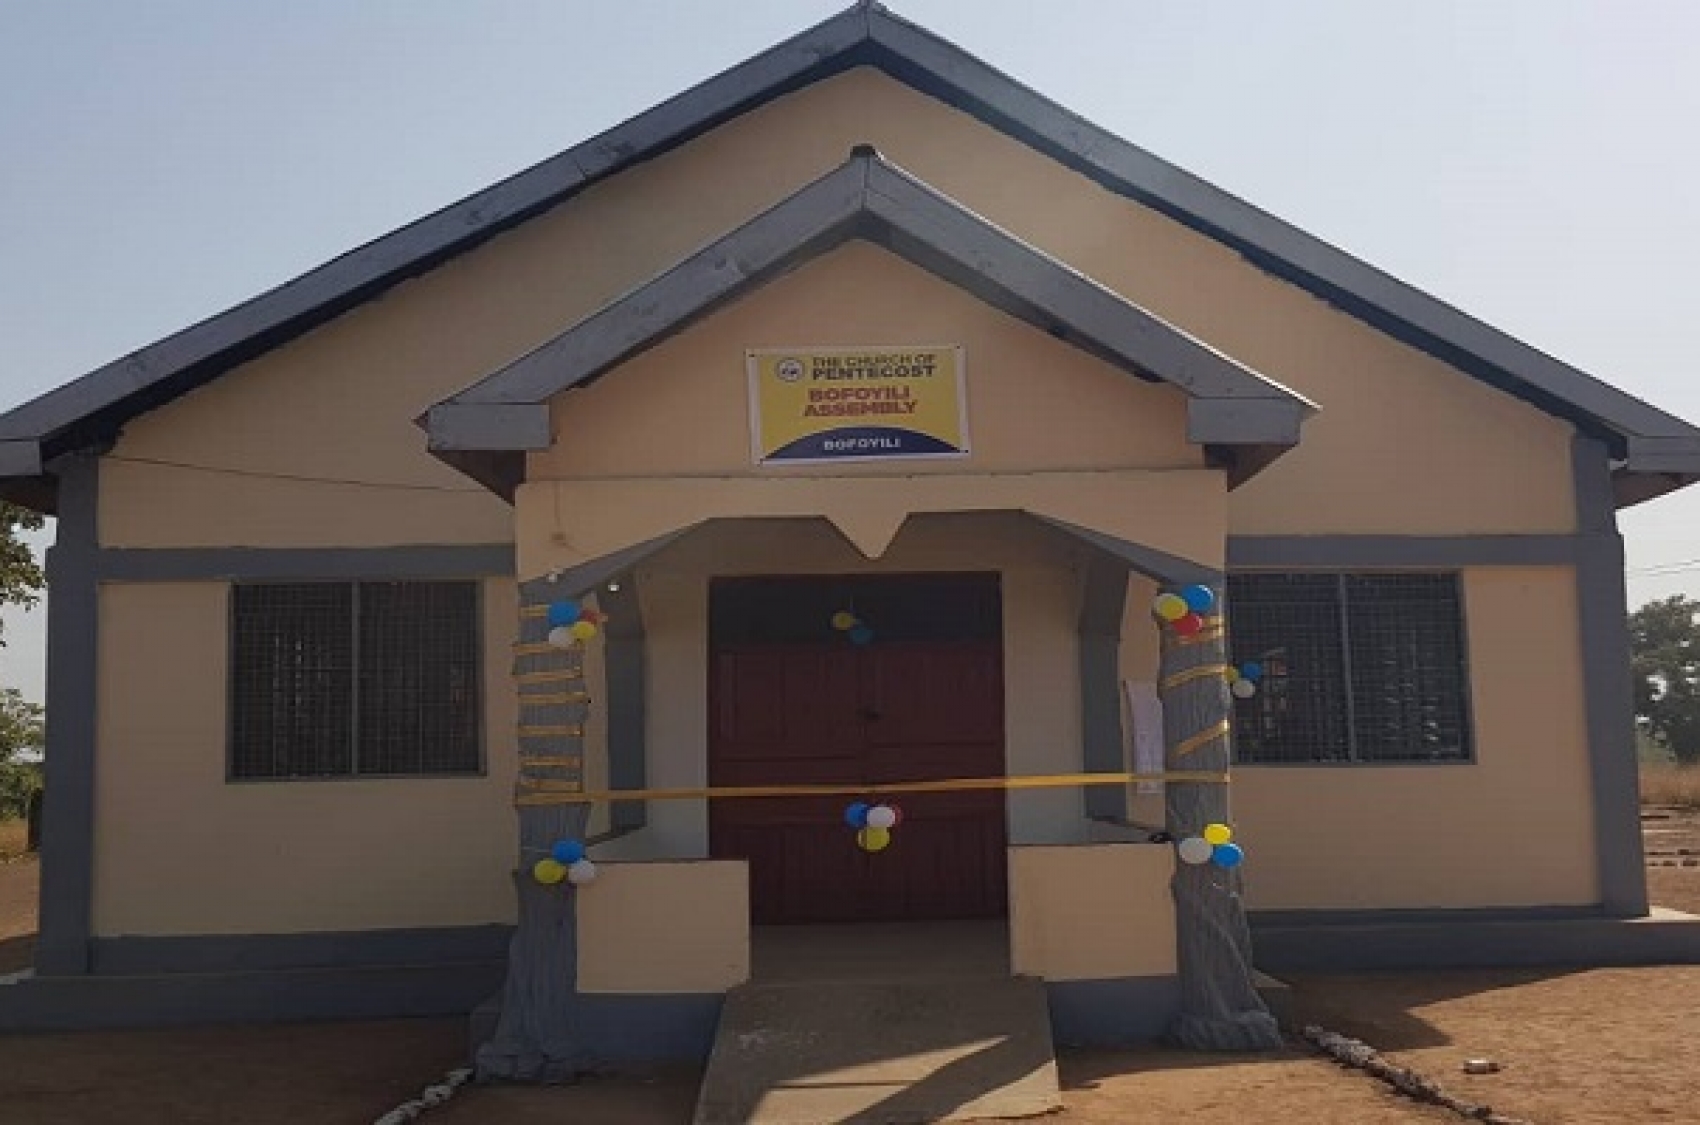 Bofoyili church building